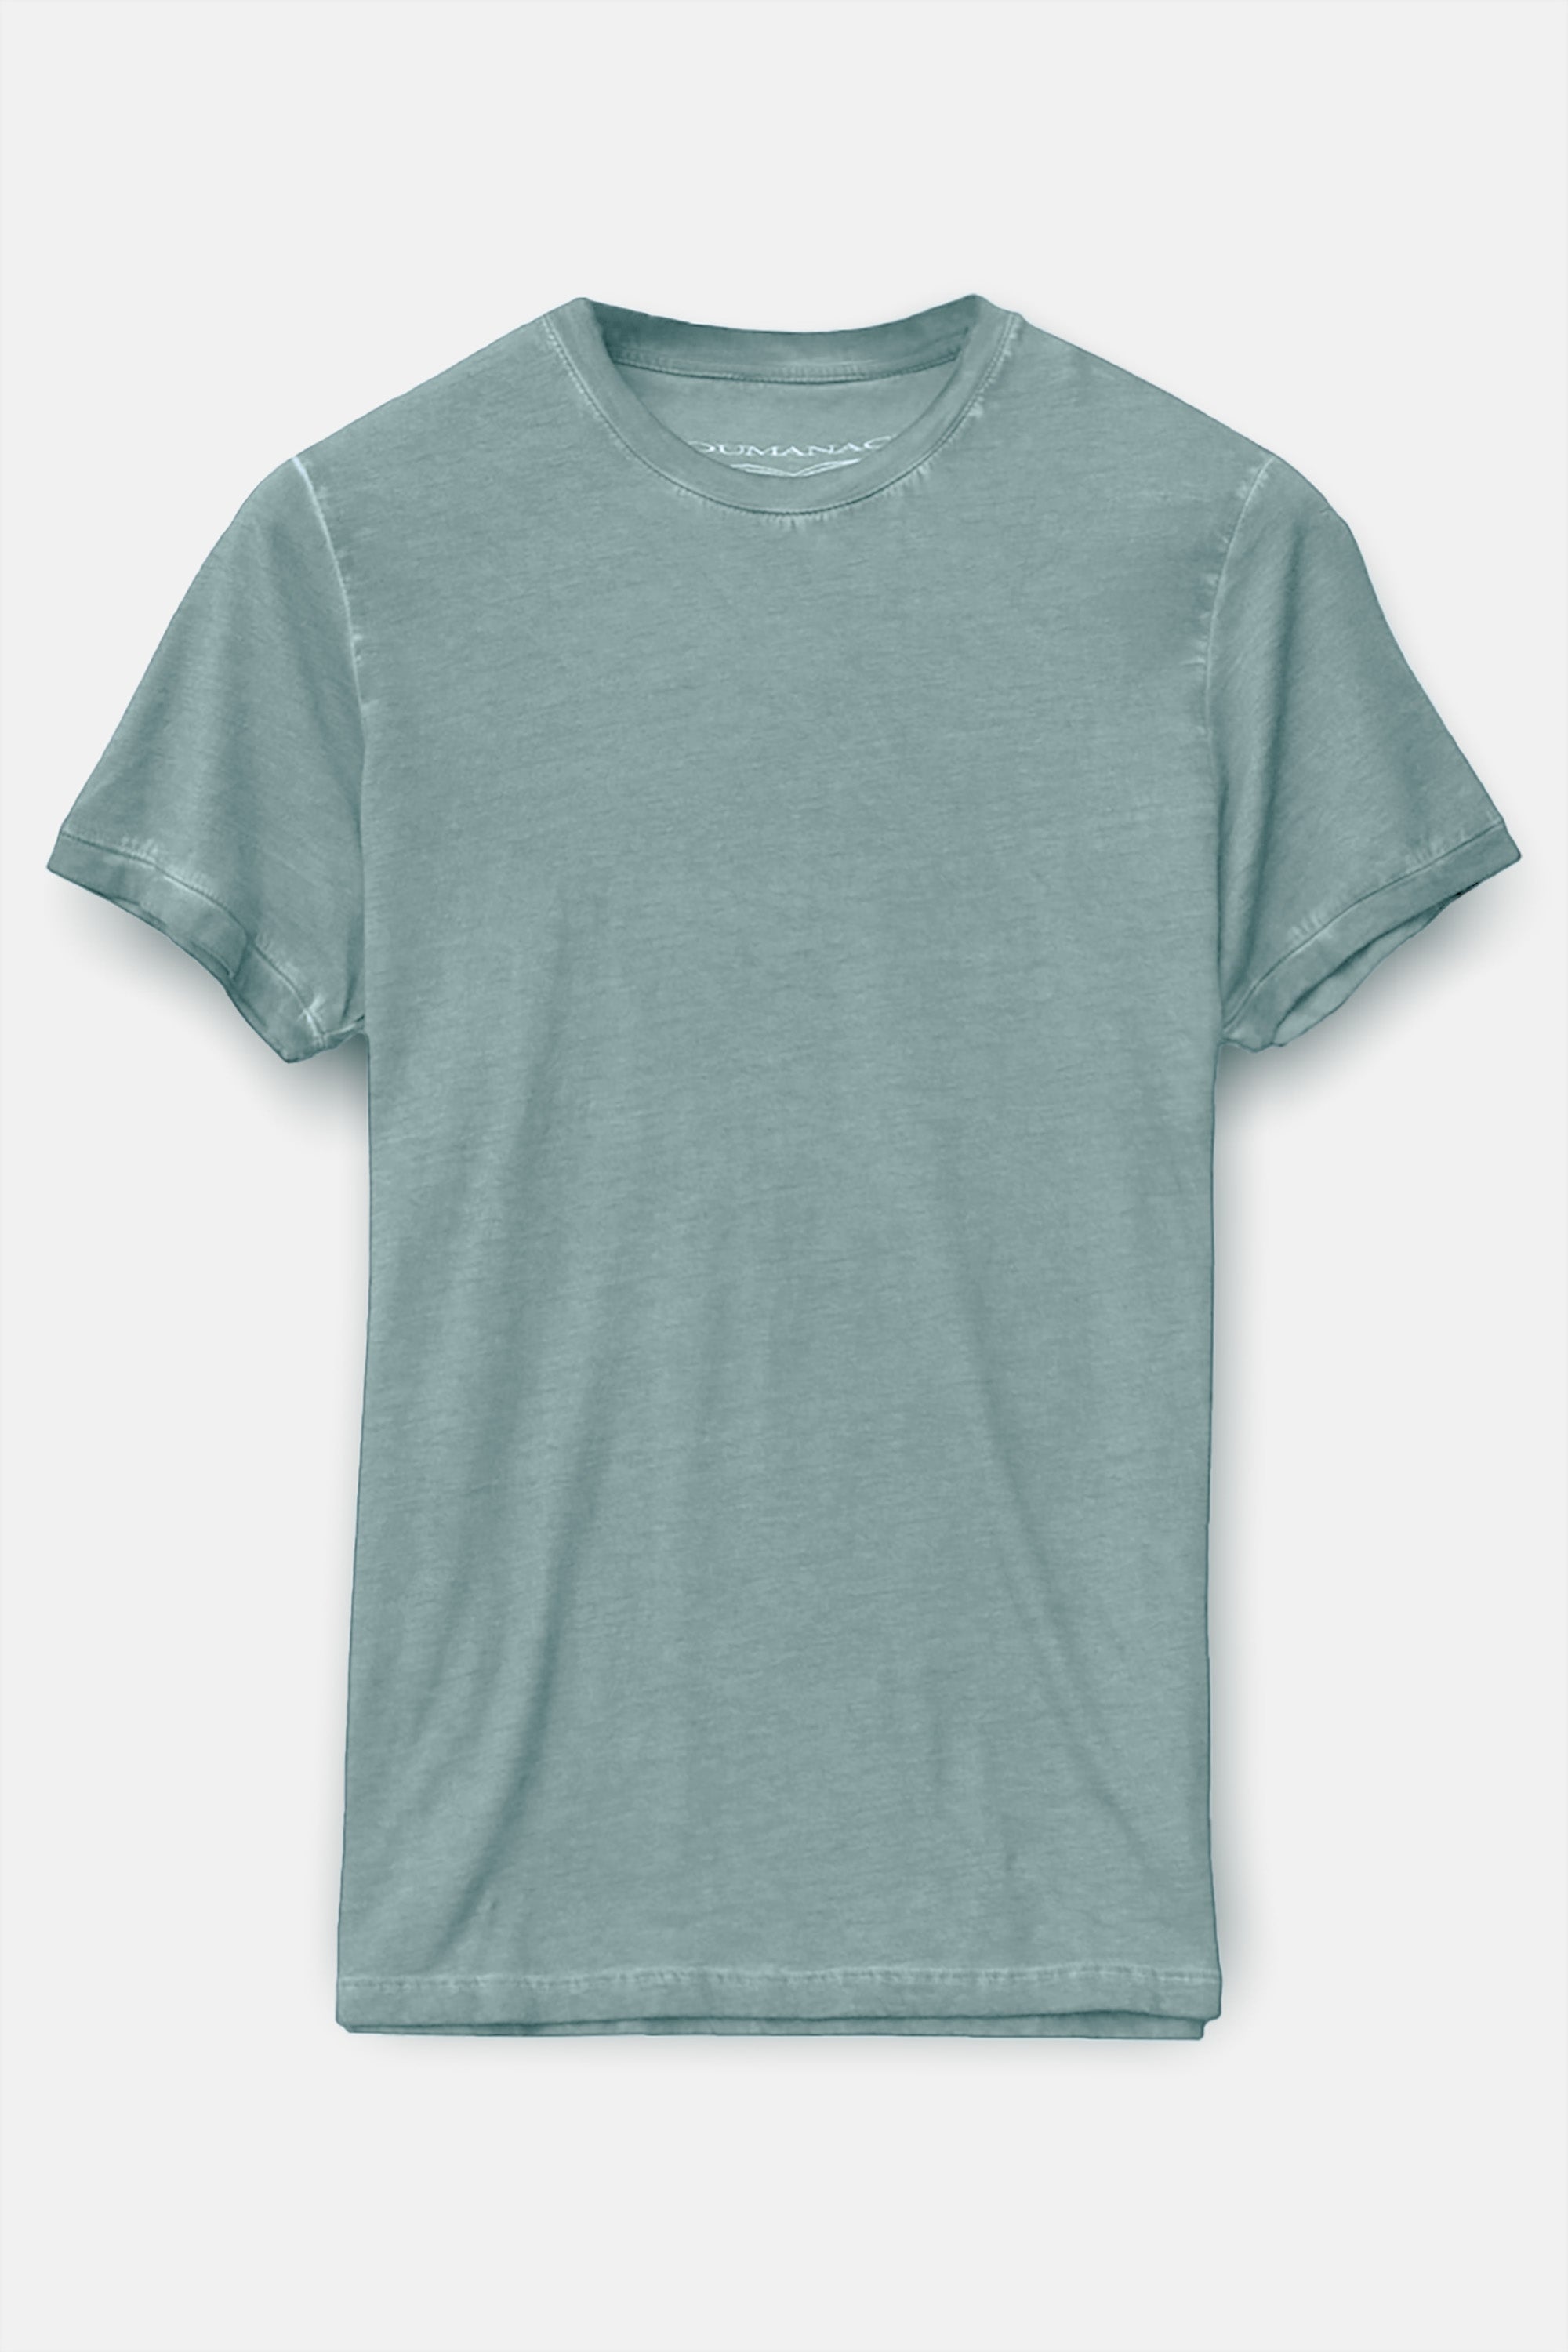 Smart Casual Cotton T-Shirt - Shark